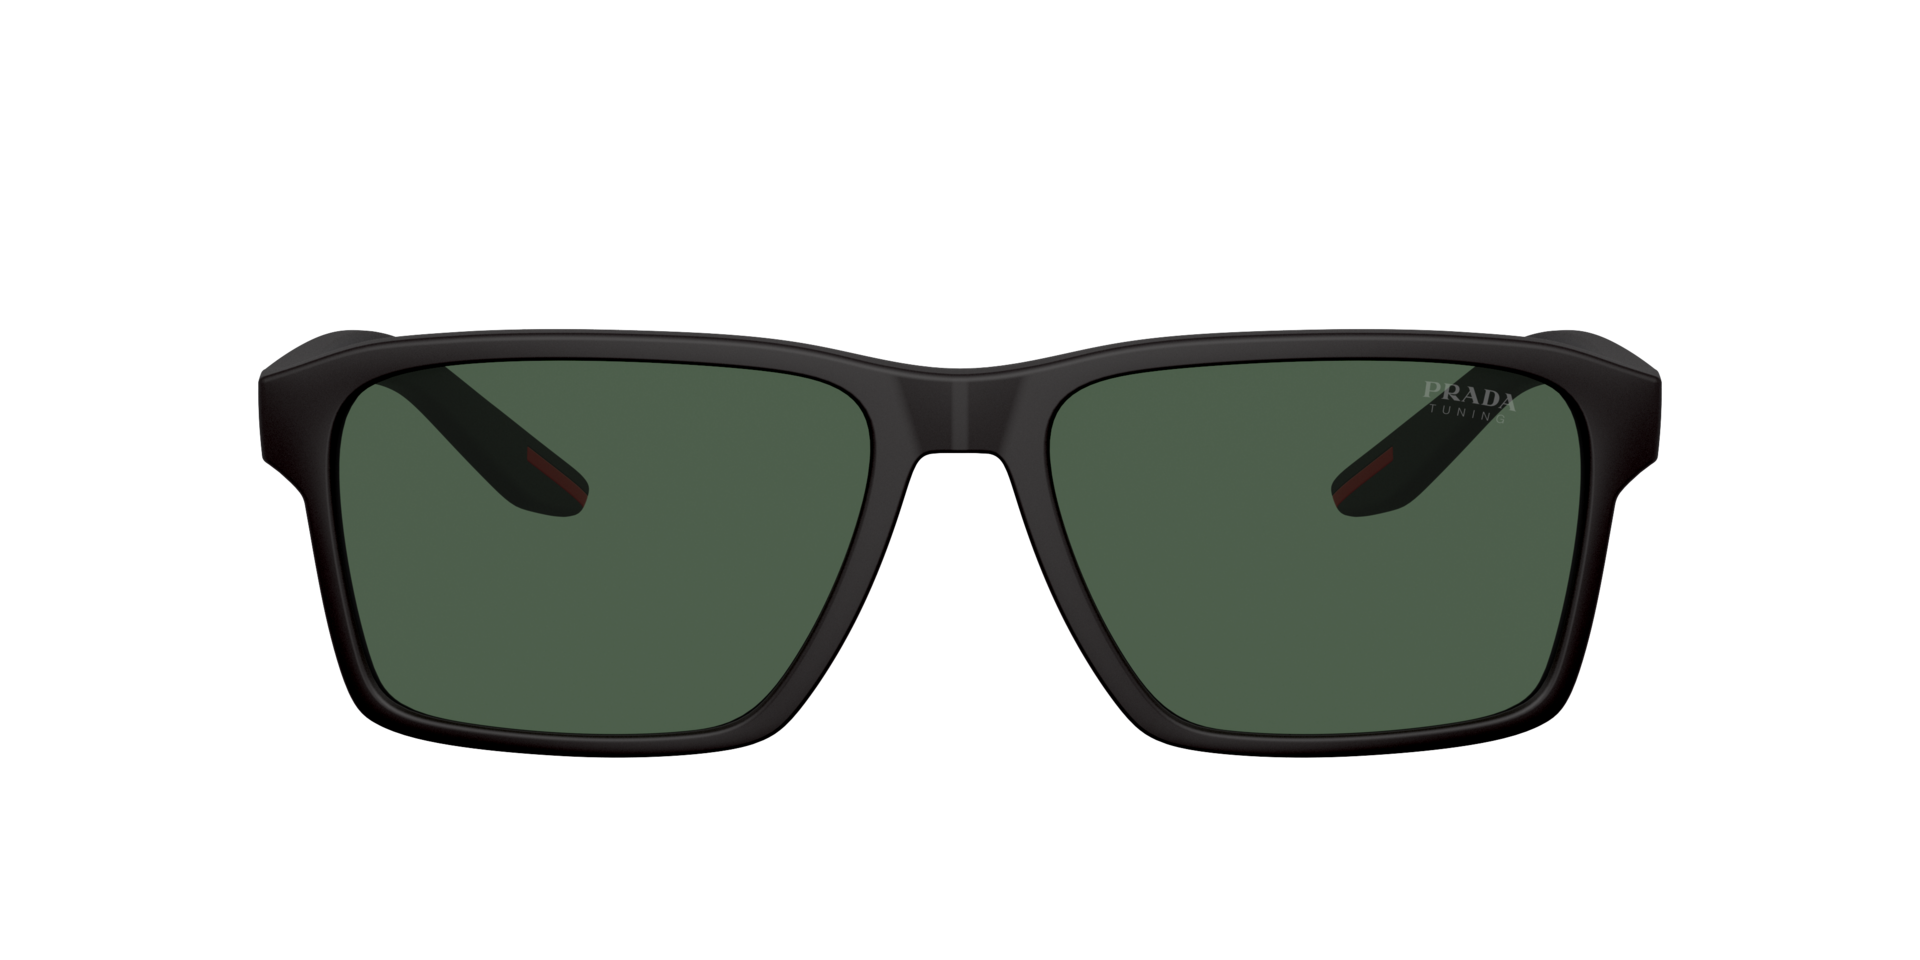 Das Bild zeigt die Sonnenbrille PS05YS DG006U von der Marke Prada Linea Rossa in schwarz.